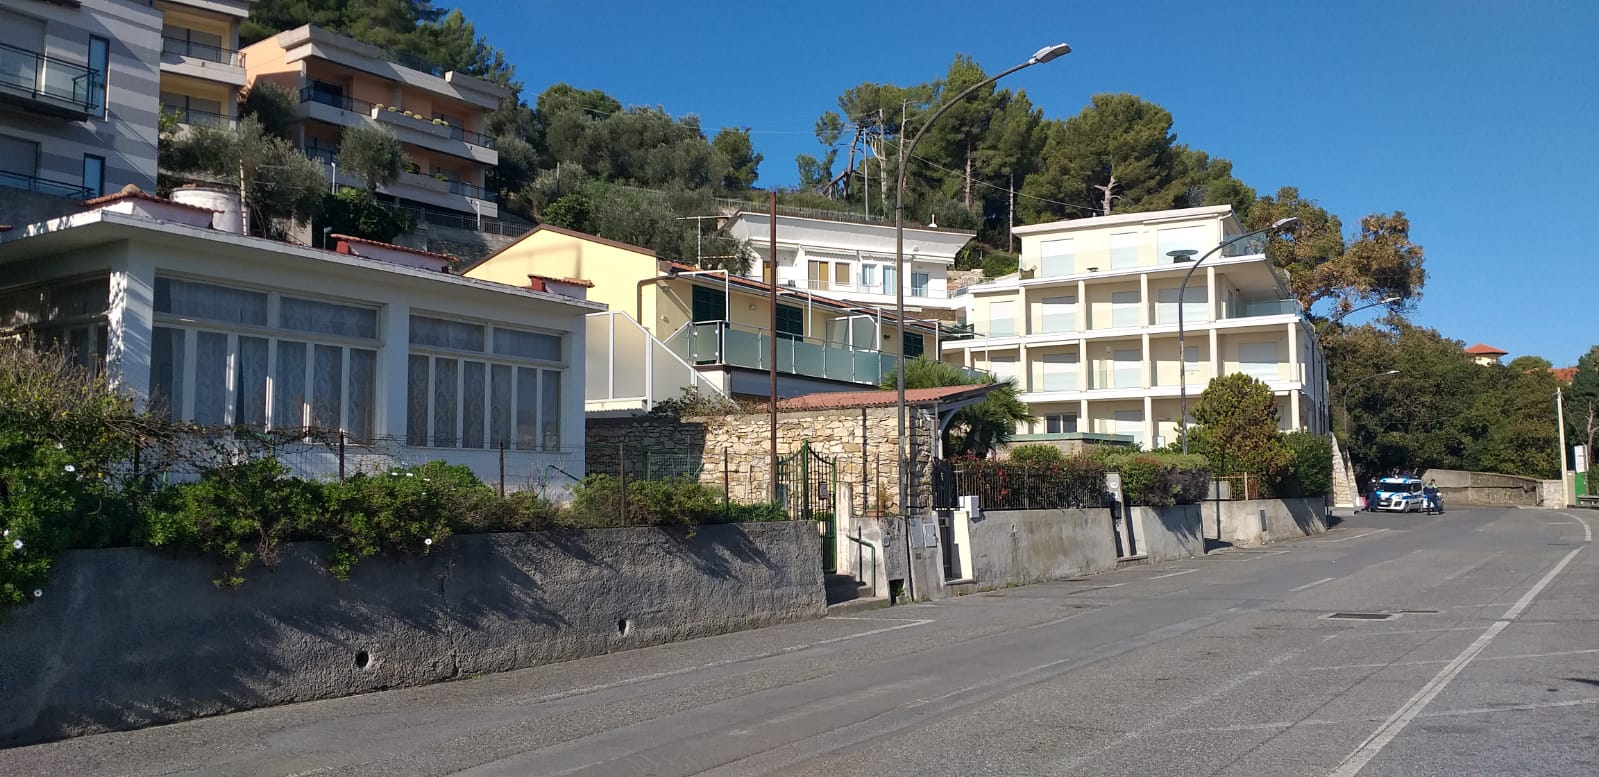 Polizia locale Diano Marina controlli residenze covid zone rosse furbetti_02